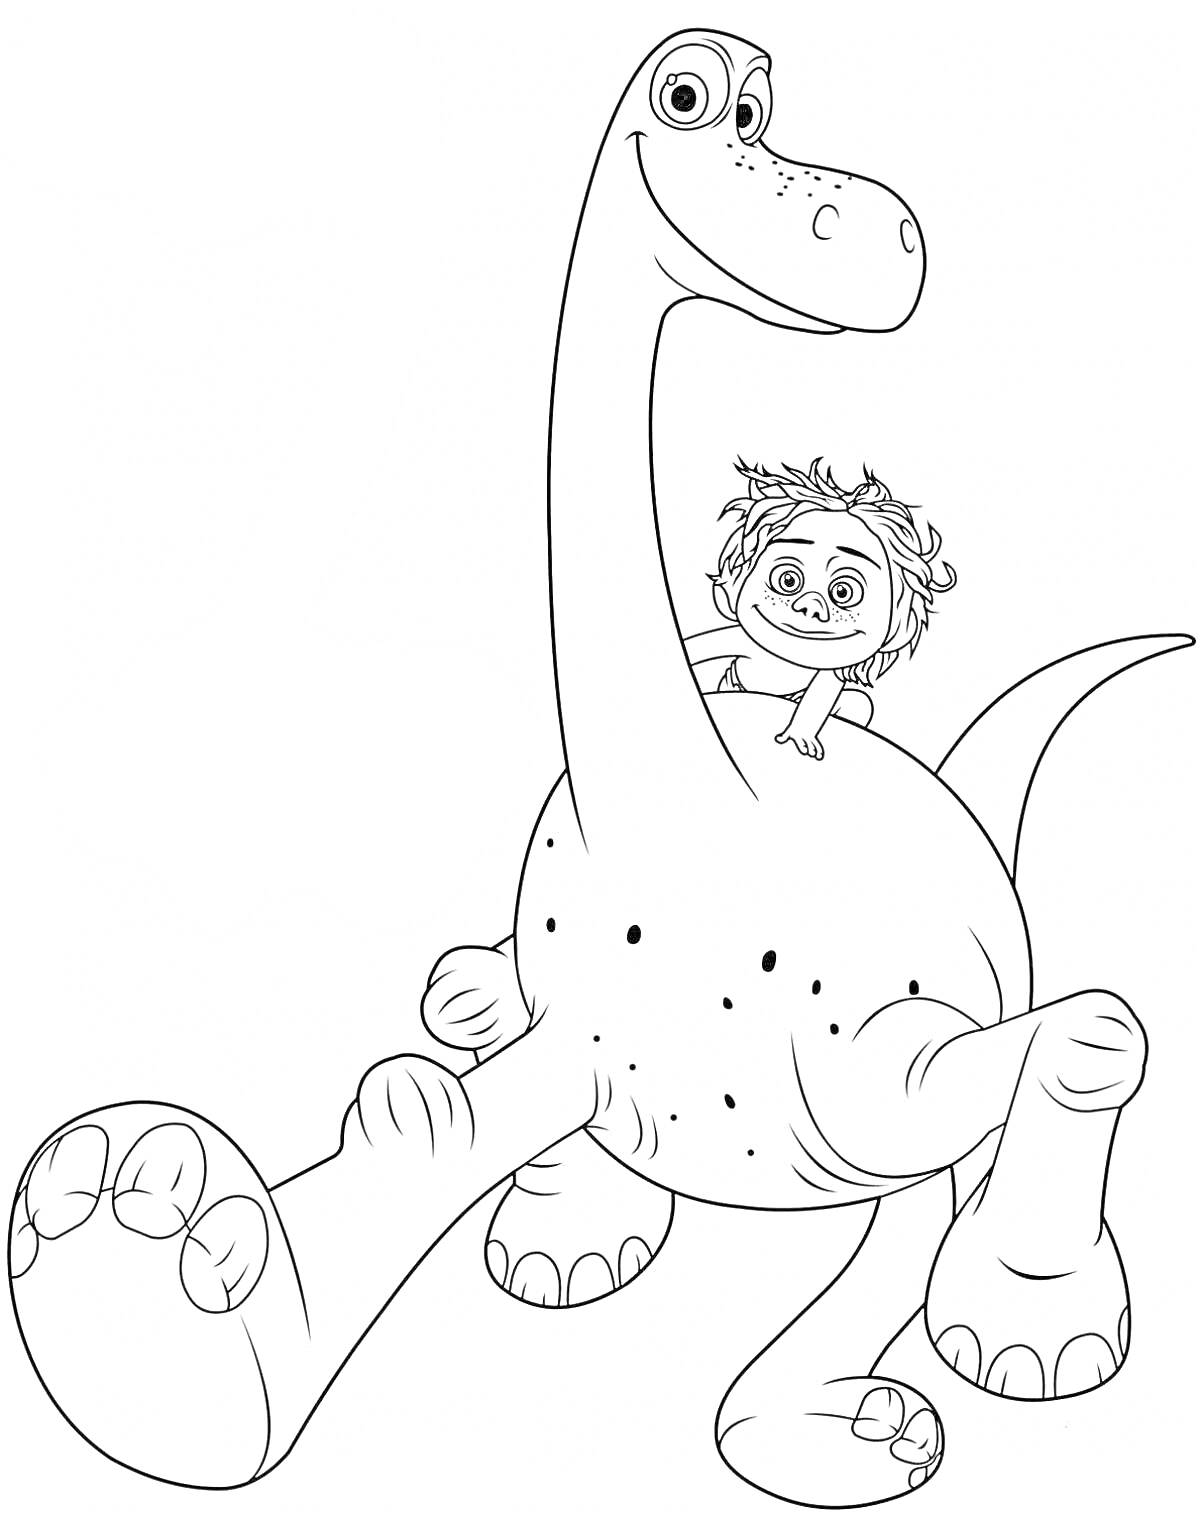 Раскраска Динозавр и мальчик из мультика